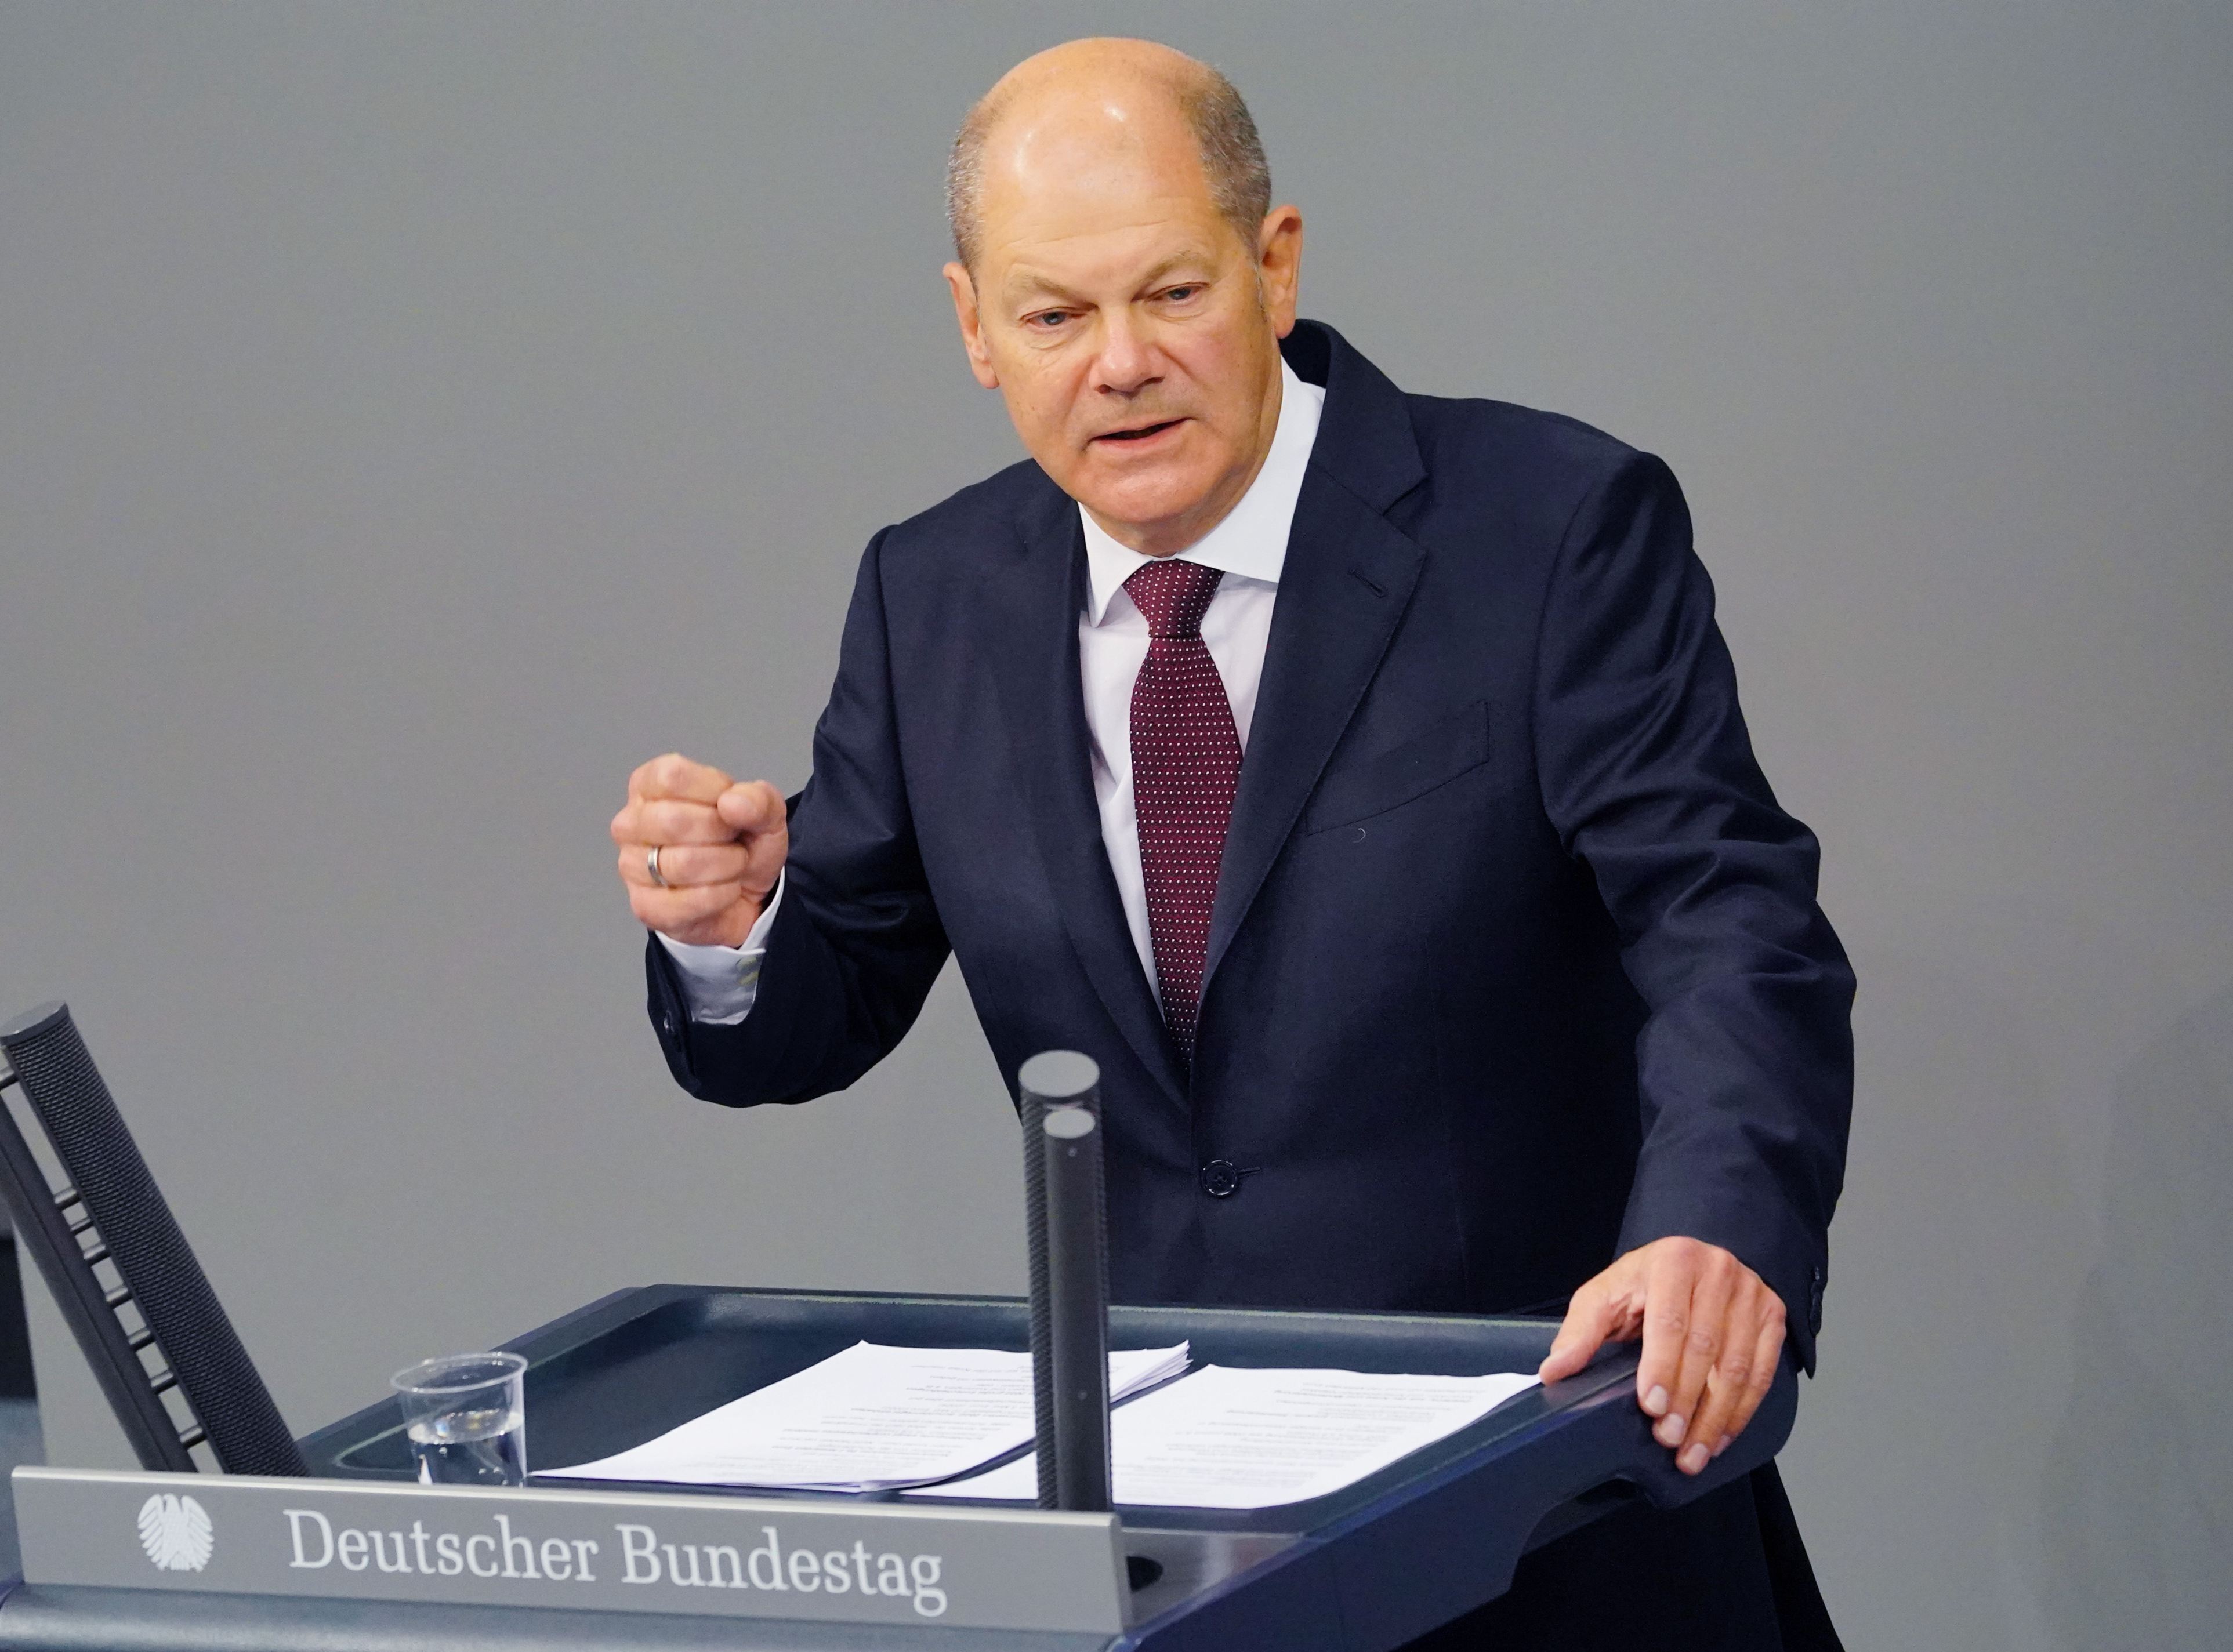 Germania anunţă reduceri de taxe pentru companii de 7 miliarde de euro pentru stimularea economiei